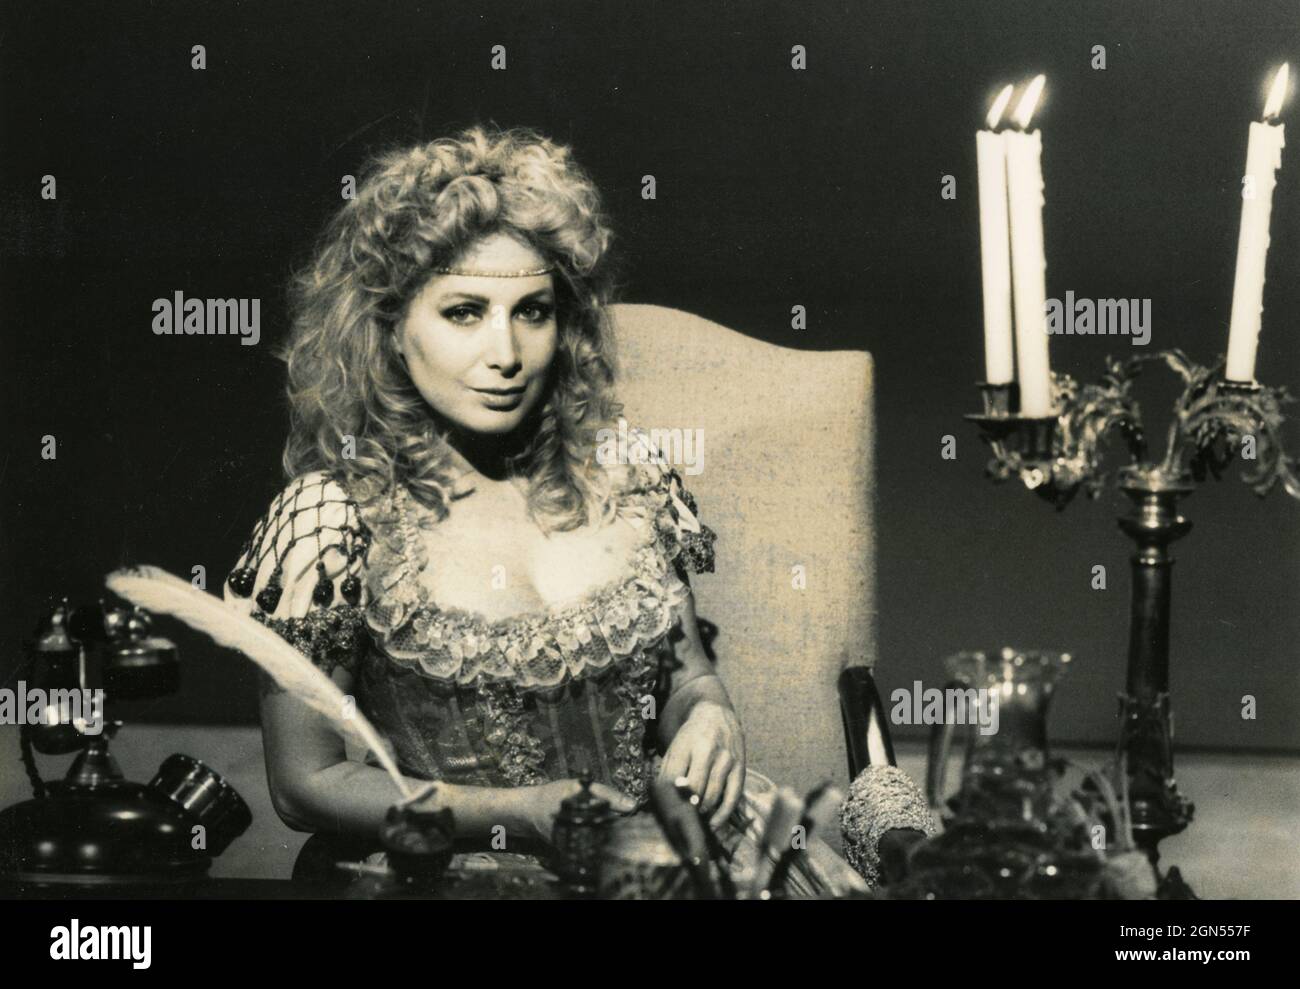 Marta flavi, anfitriona del programa de televisión italiano, 1980s Foto de stock